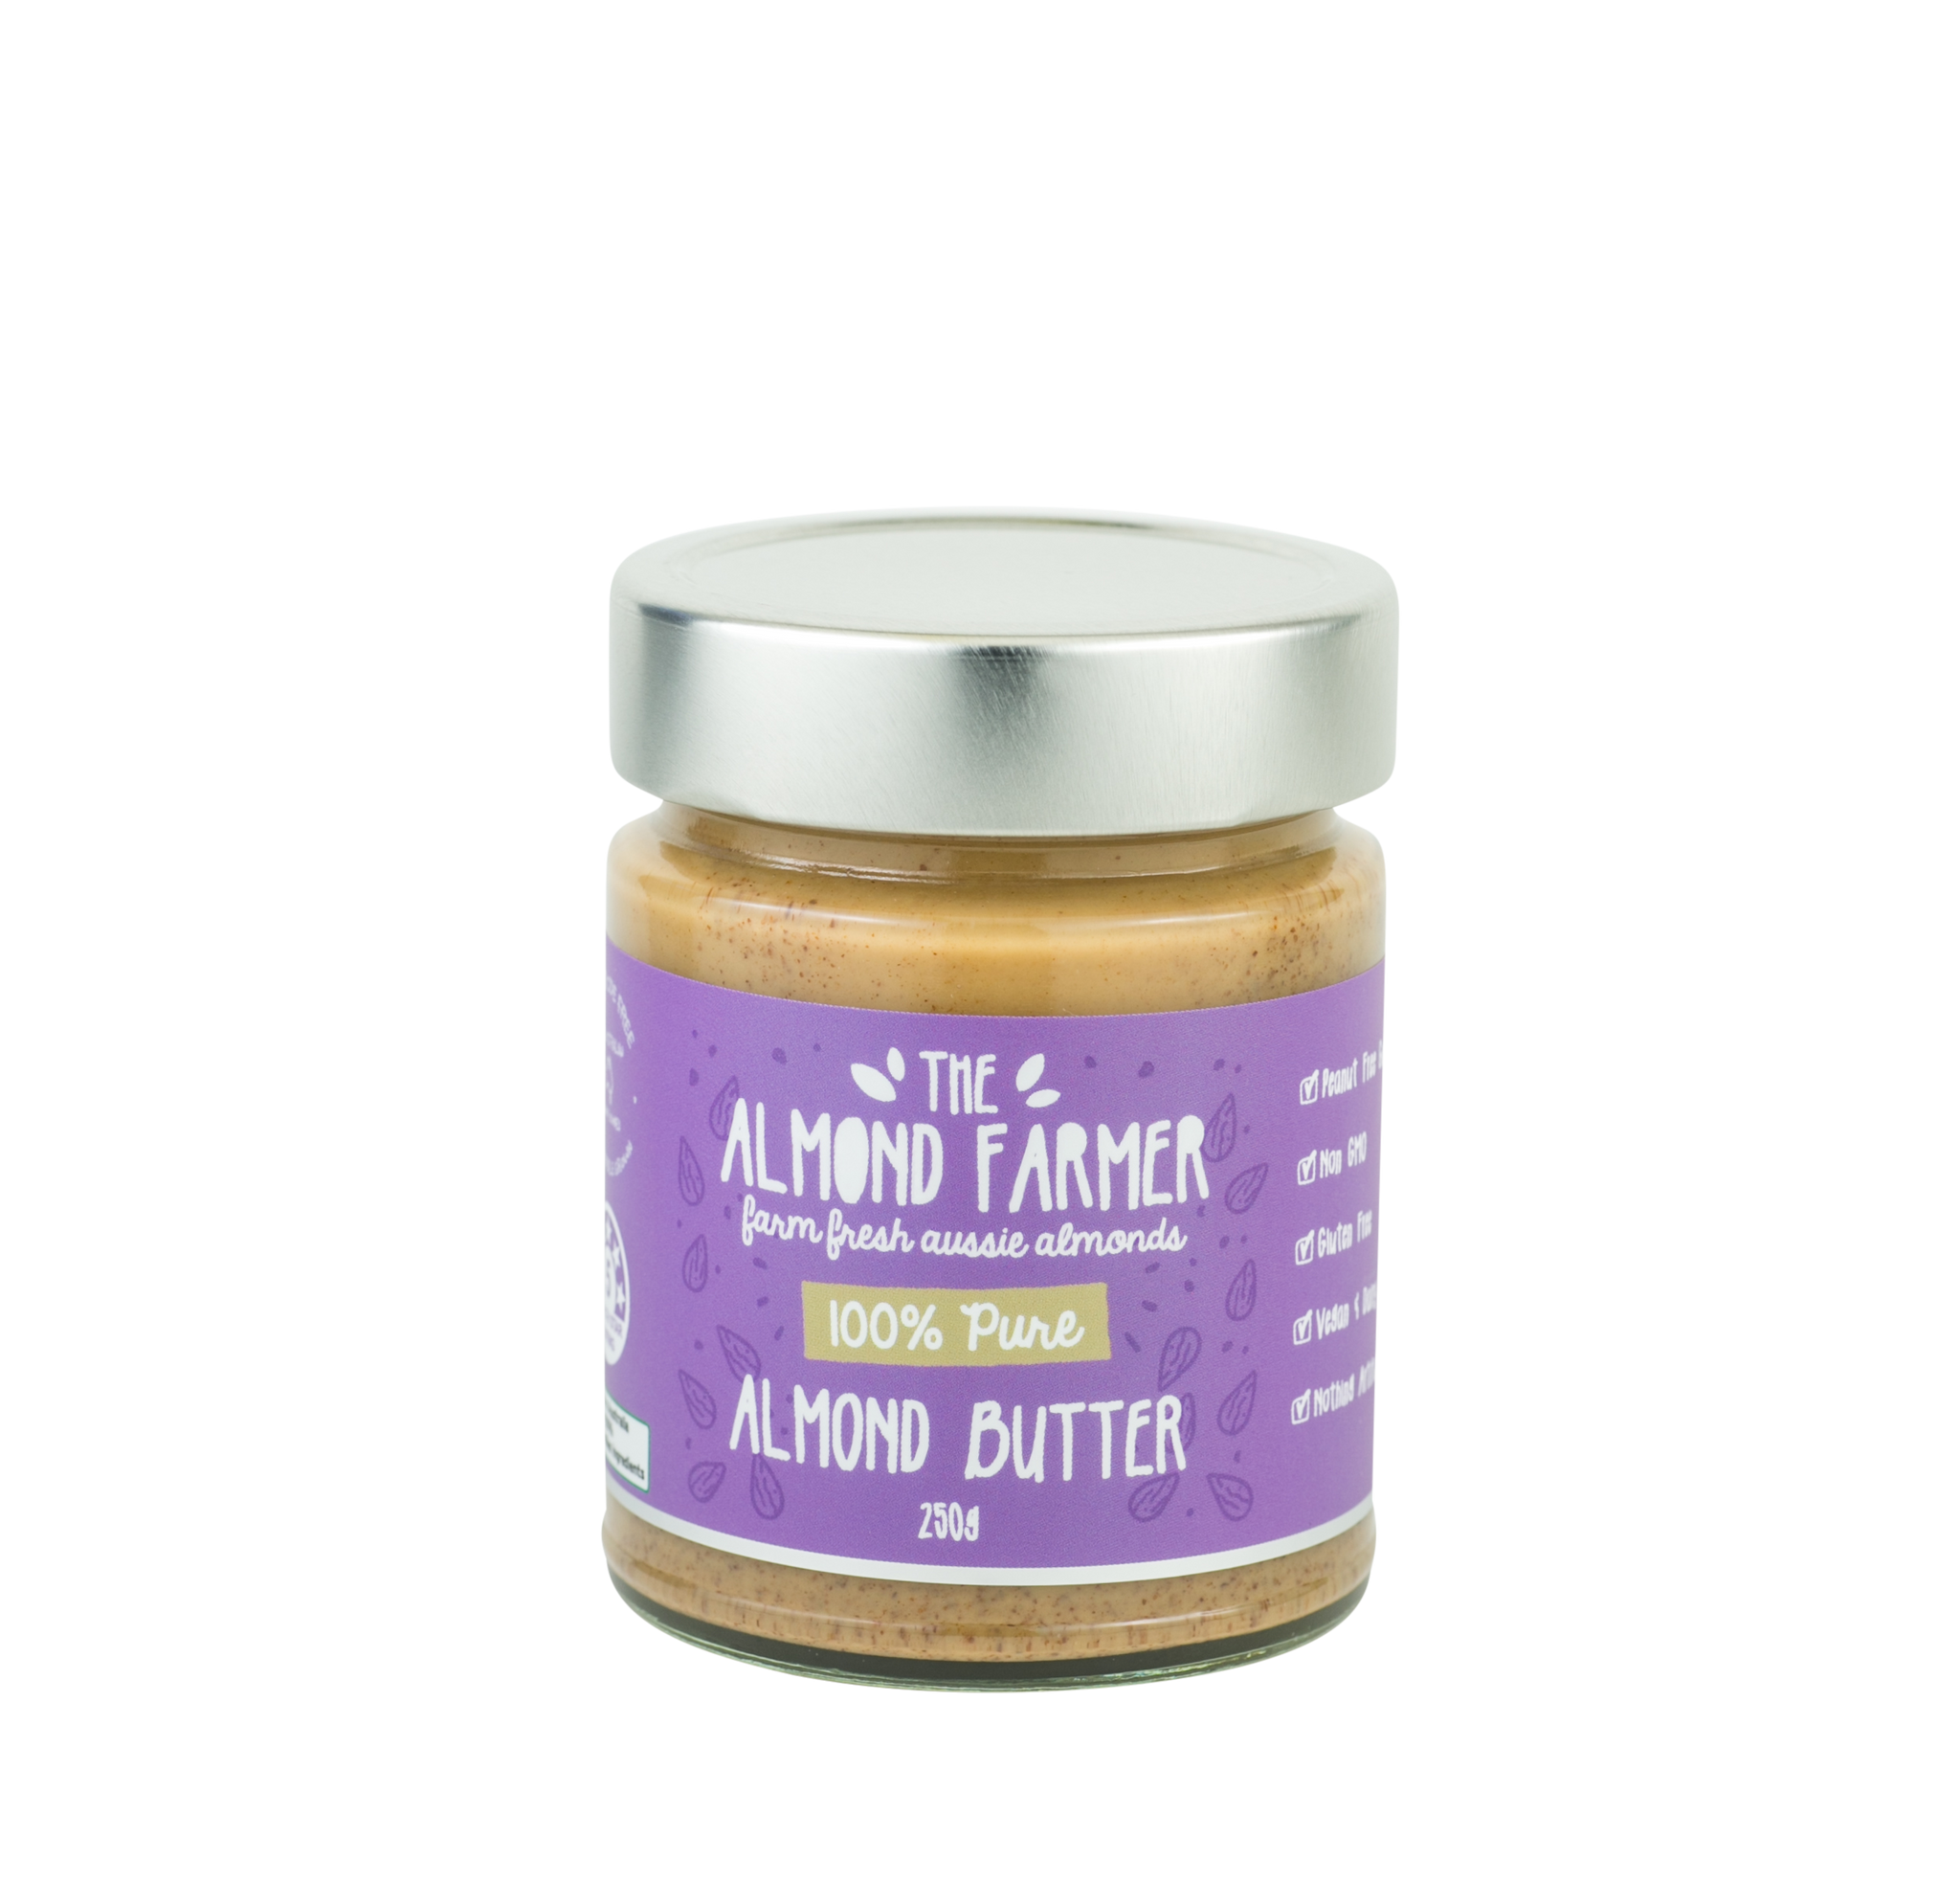 The Almond Farmer Almond Butter 250g